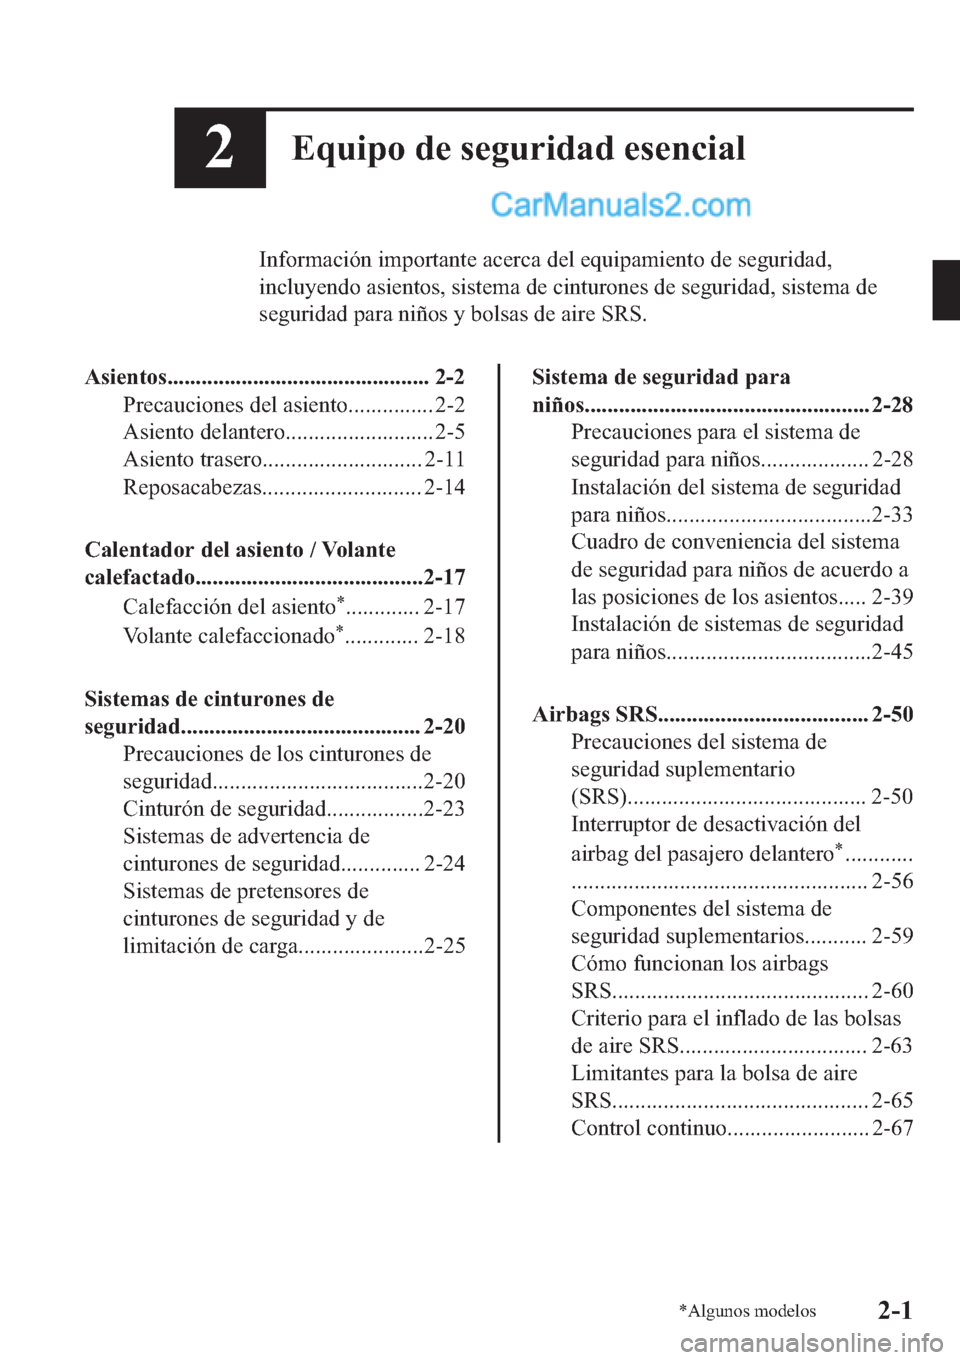 MAZDA MODEL 2 2019  Manual del propietario (in Spanish) ��(�T�X�L�S�R��G�H��V�H�J�X�U�L�G�D�G��H�V�H�Q�F�L�D�O
�,�Q�I�R�U�P�D�F�L�y�Q��L�P�S�R�U�W�D�Q�W�H��D�F�H�U�F�D��G�H�O��H�T�X�L�S�D�P�L�H�Q�W�R��G�H��V�H�J�X�U�L�G�D�G�
�L�Q�F�O�X�\�H�Q�G�R